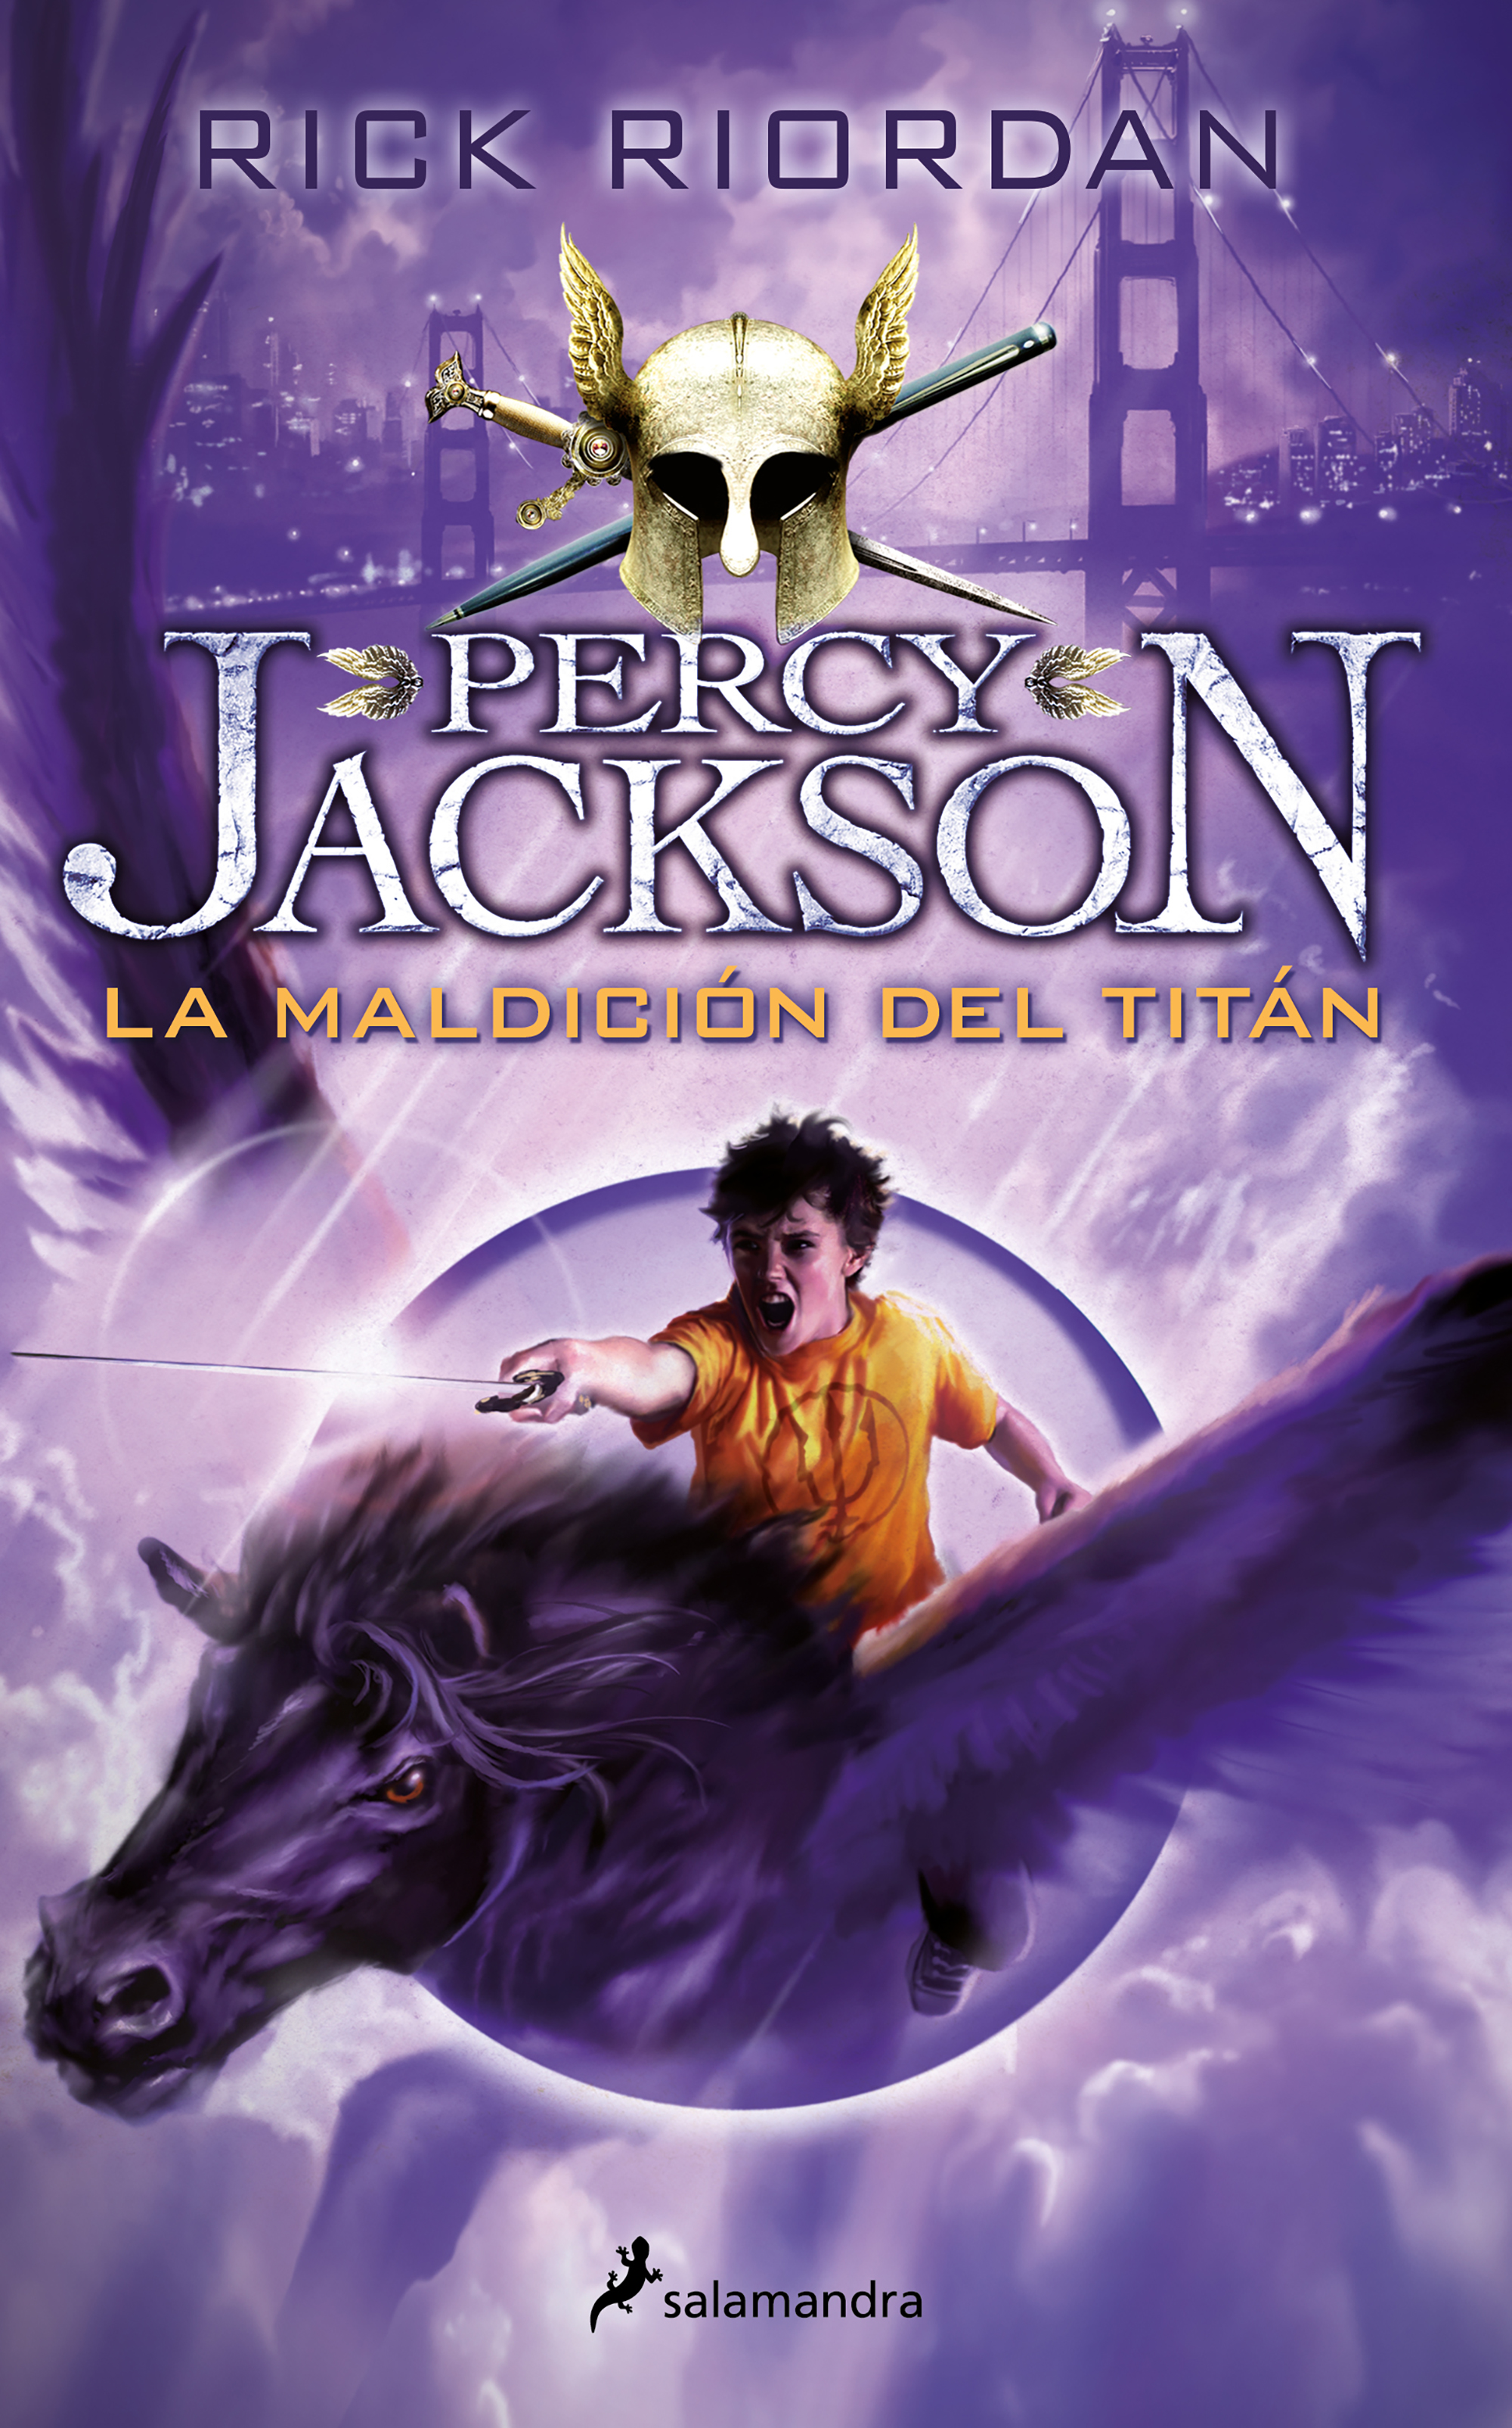 Percy Jackson y el ladrón del rayo = Percy Jackson and the Olympians: the  lightning thief - Universidad de Sevilla